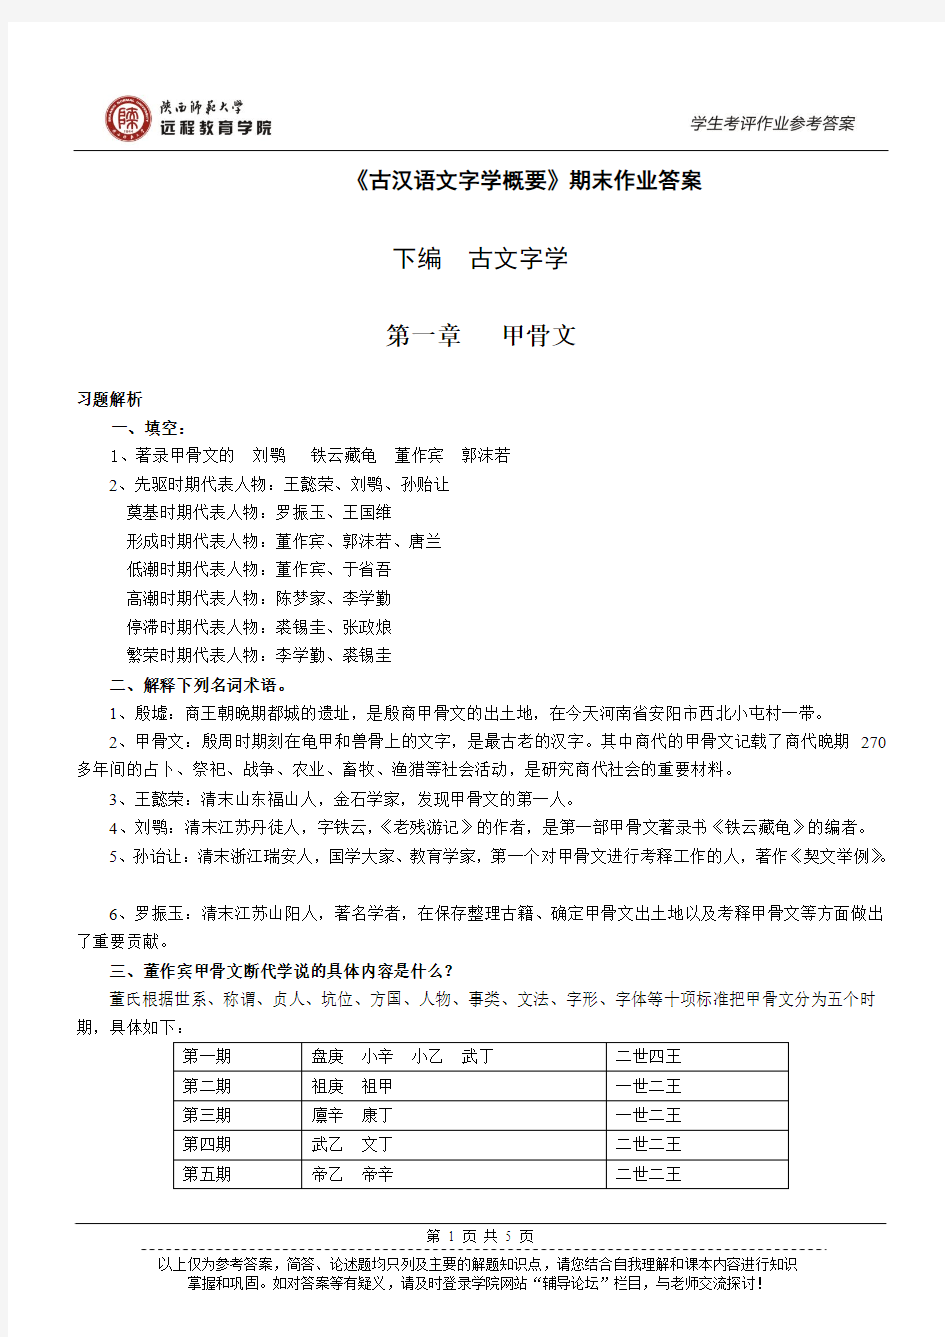 陕师大 古汉语文字学概论 期末作业答案